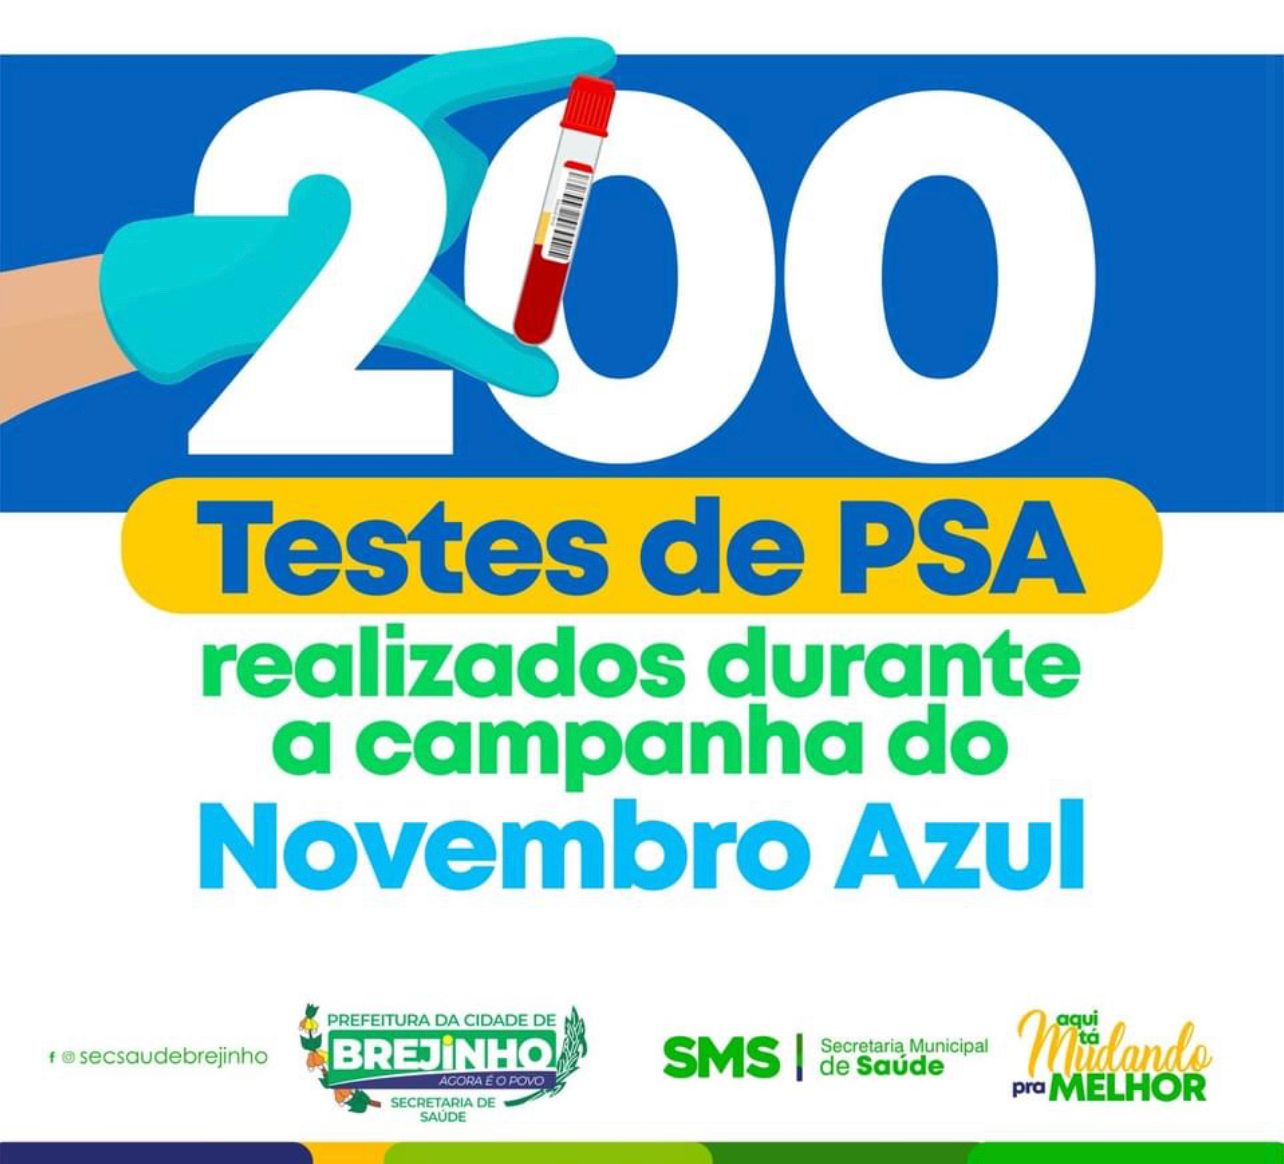 Prefeitura de Brejinho realizou 200 exames de PSA no mês de novembro